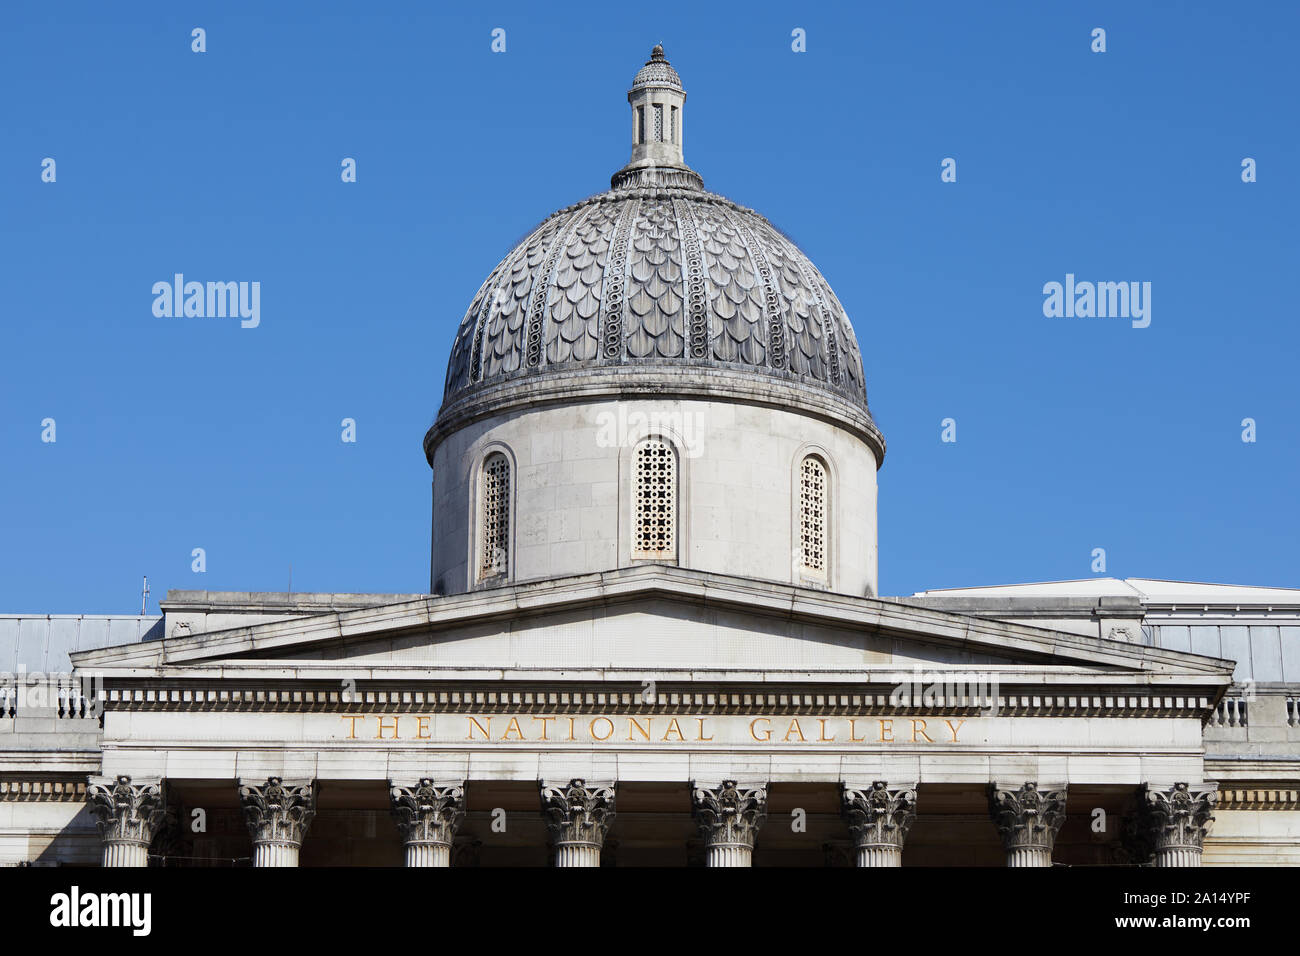 London, England - Sept 18, 2019: Die Kuppel und die Oberseite des Portikus der National Gallery, mit Blick auf den Trafalgar Square. Stockfoto